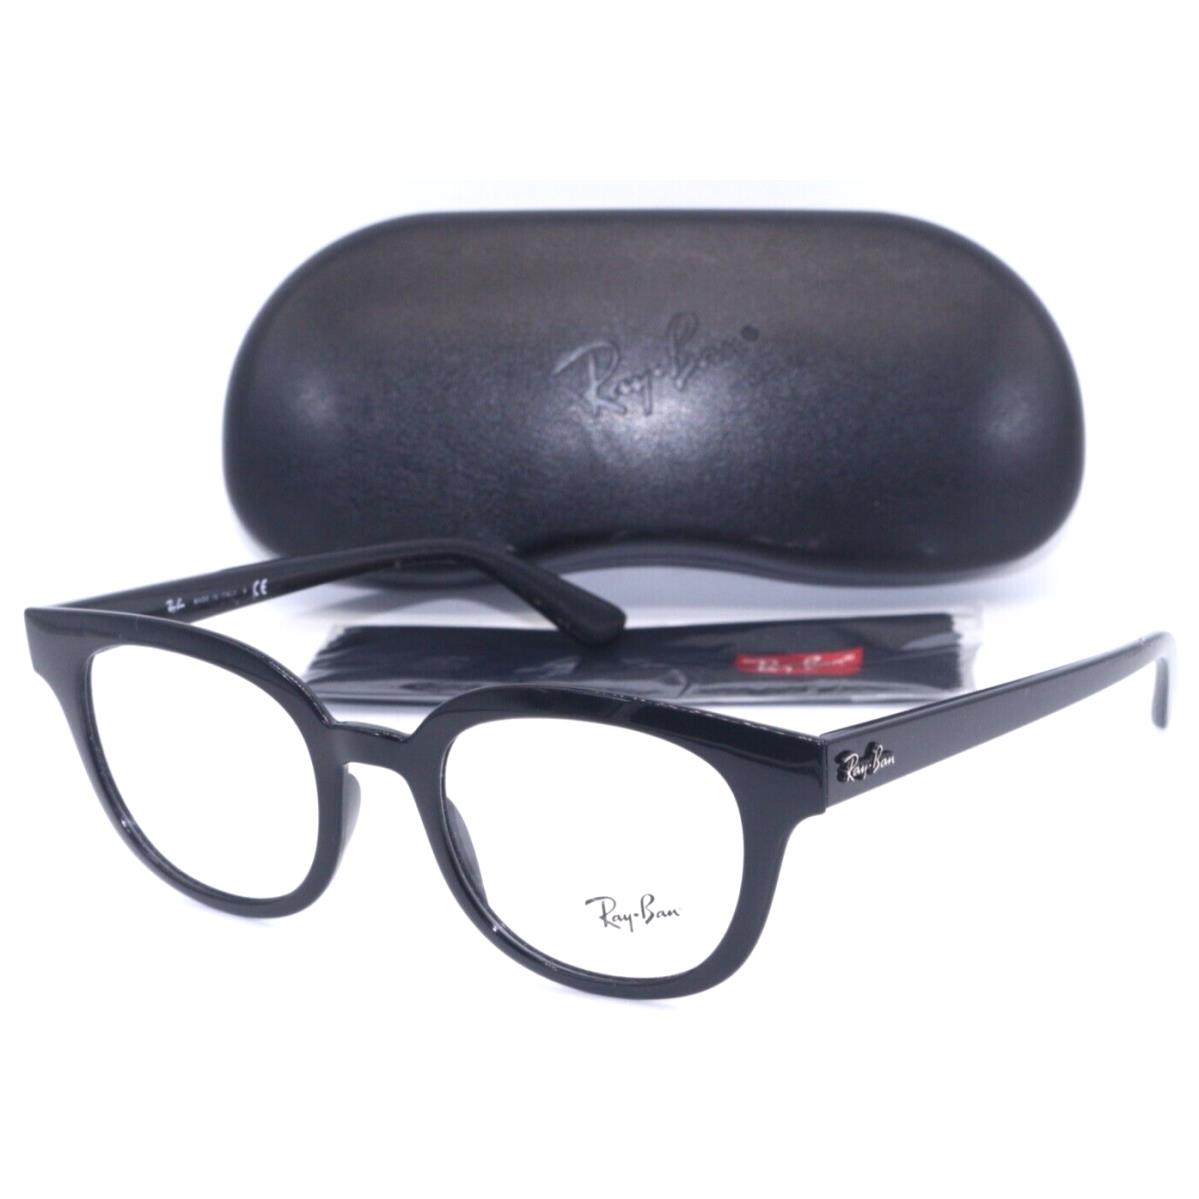 Ray-ban RB 4324-V 2000 Round Polished Black Frame Eyeglasses 50-21